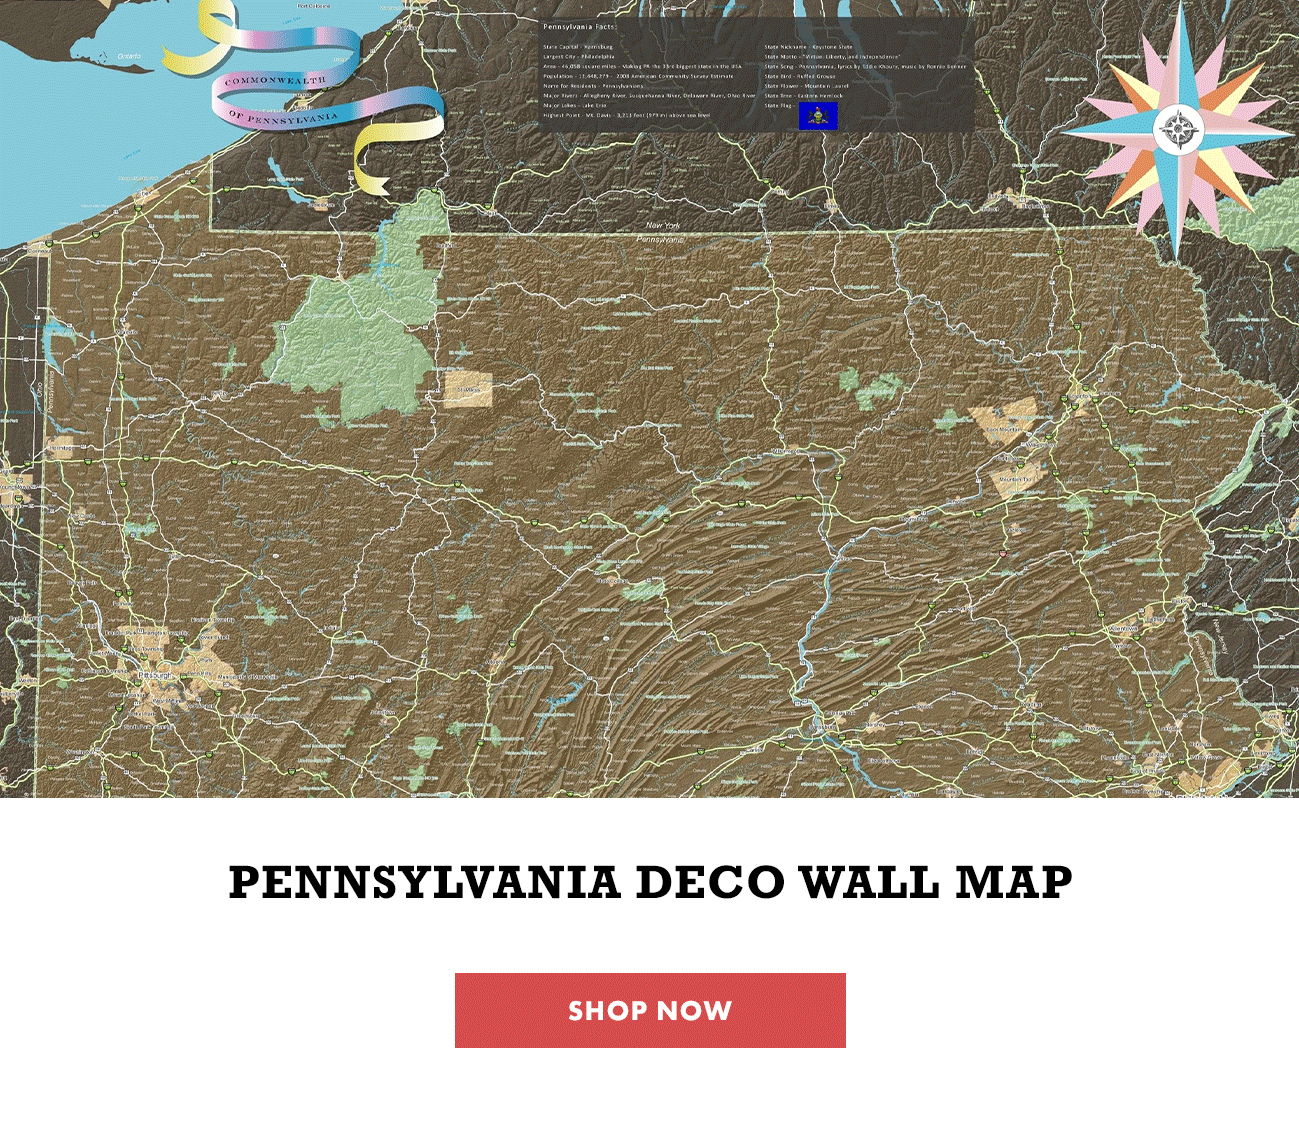 Pennsylvania Deco Wall Map Shop Now